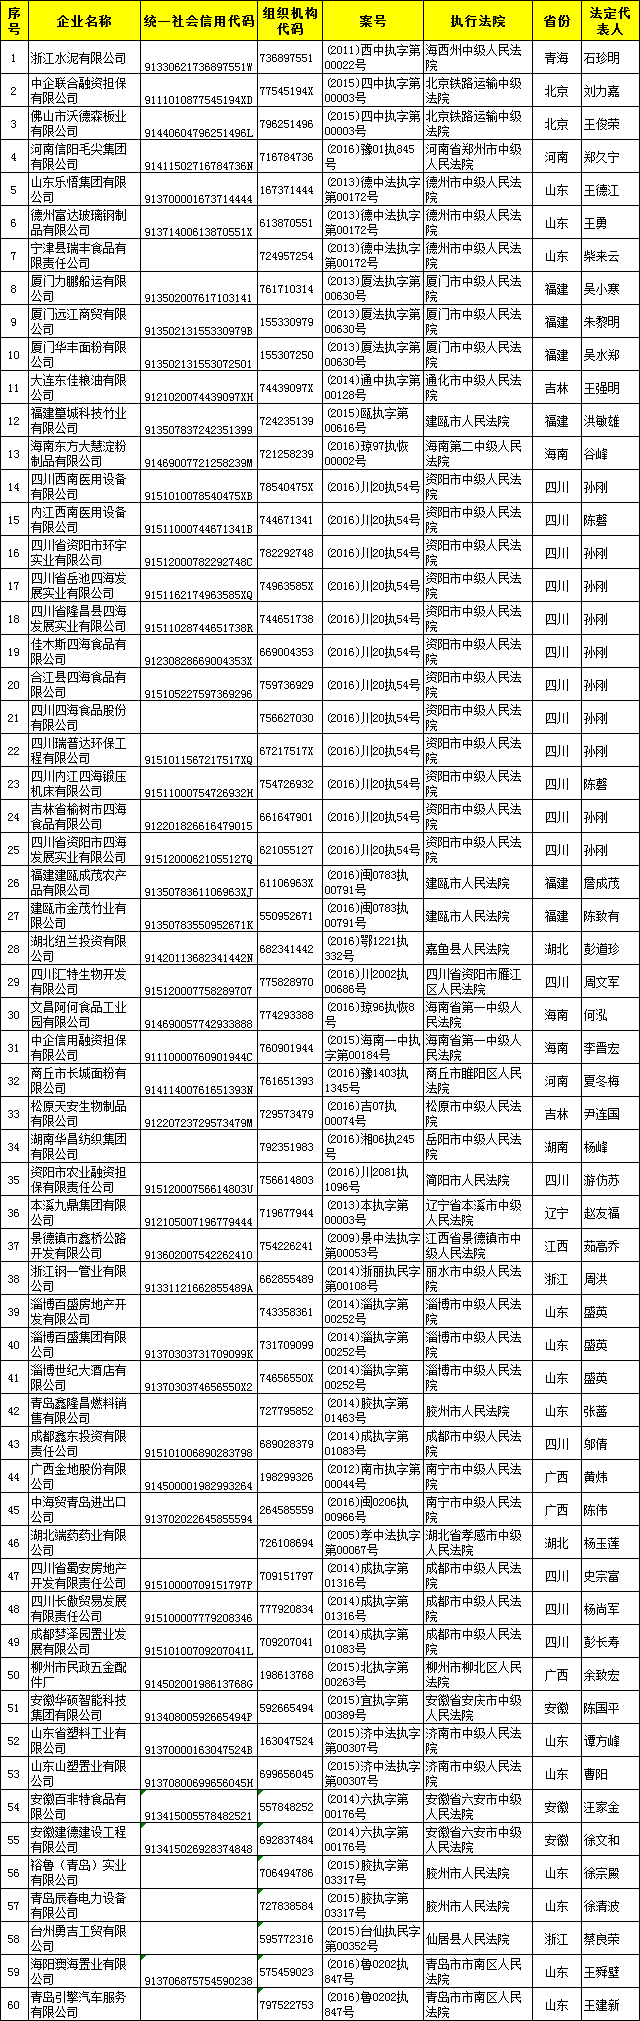 发改委发布首批涉金融黑名单(表)